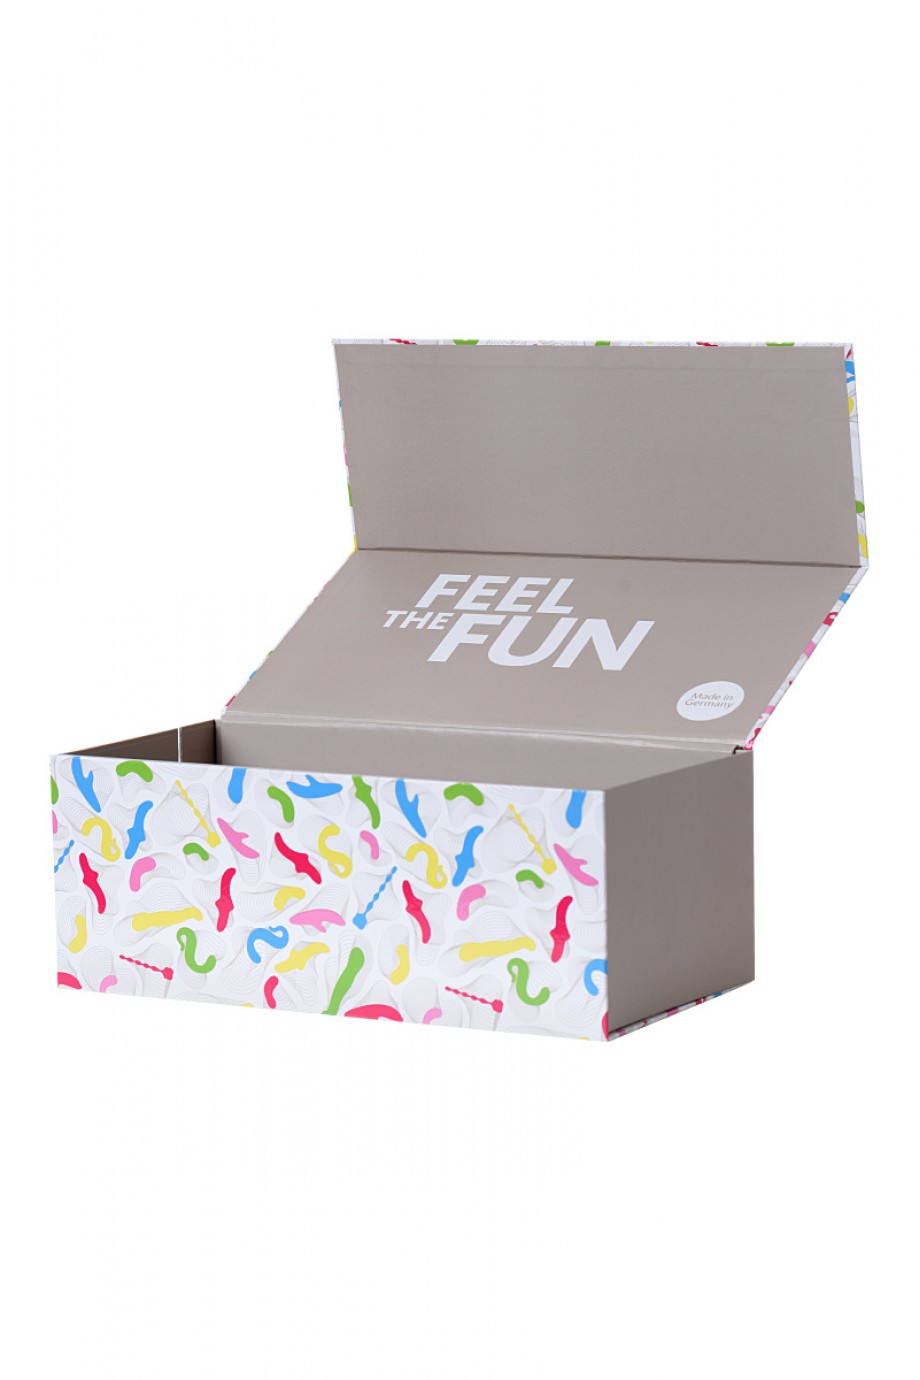 Коробка Fun Factory для хранения игрушек